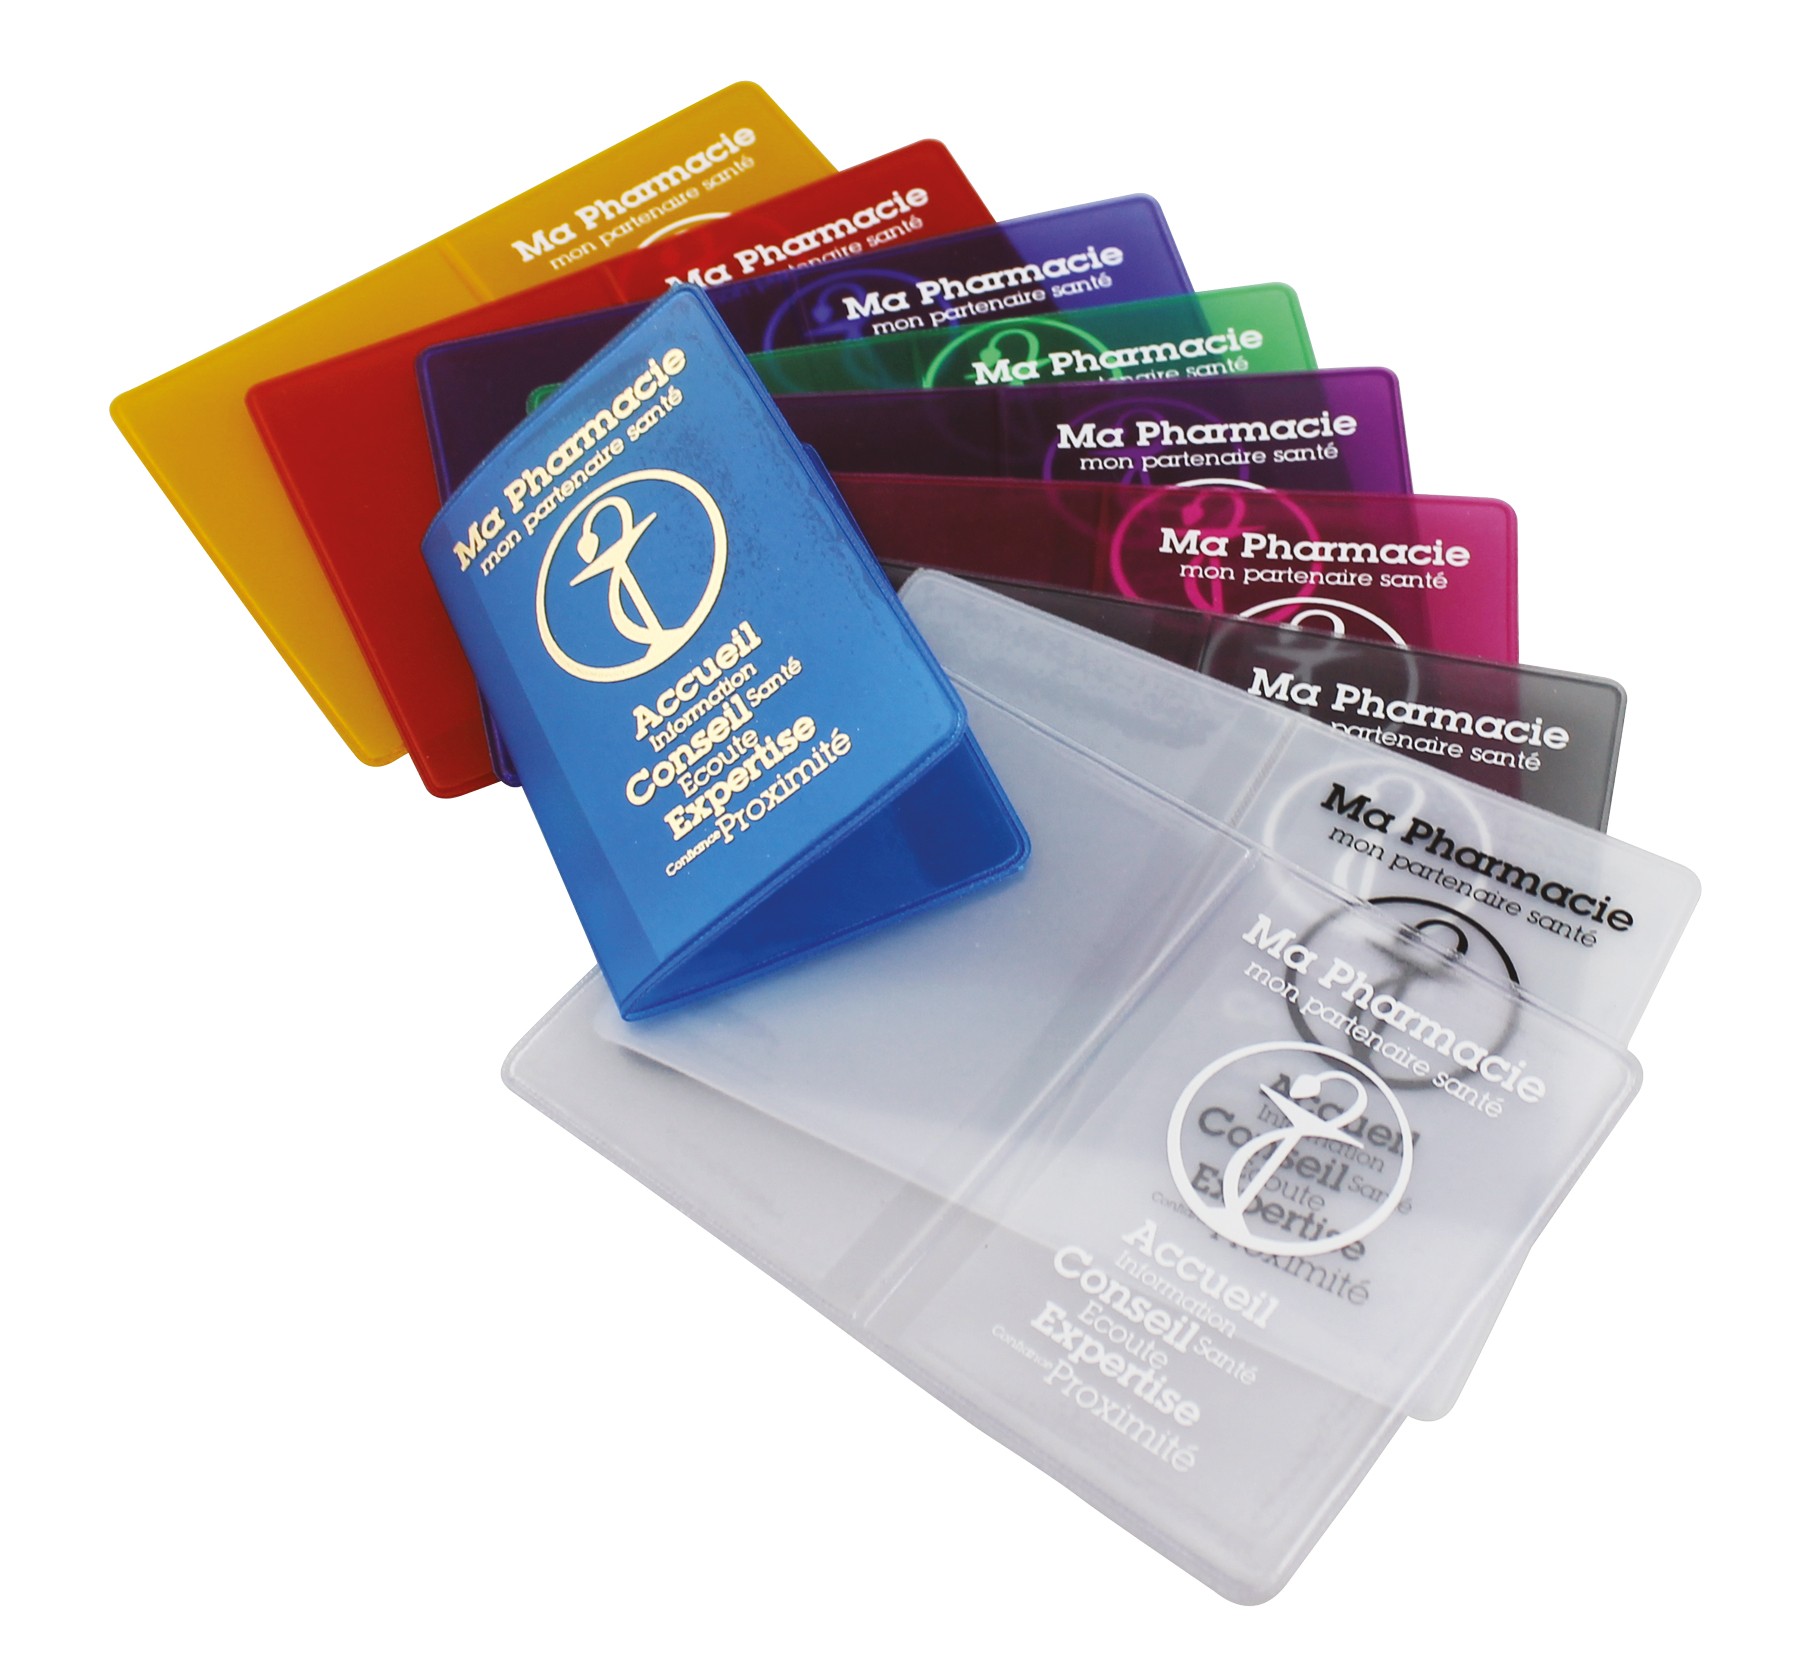 Cartes en PVC avec 6 poches pour personnalisé avec votre logo